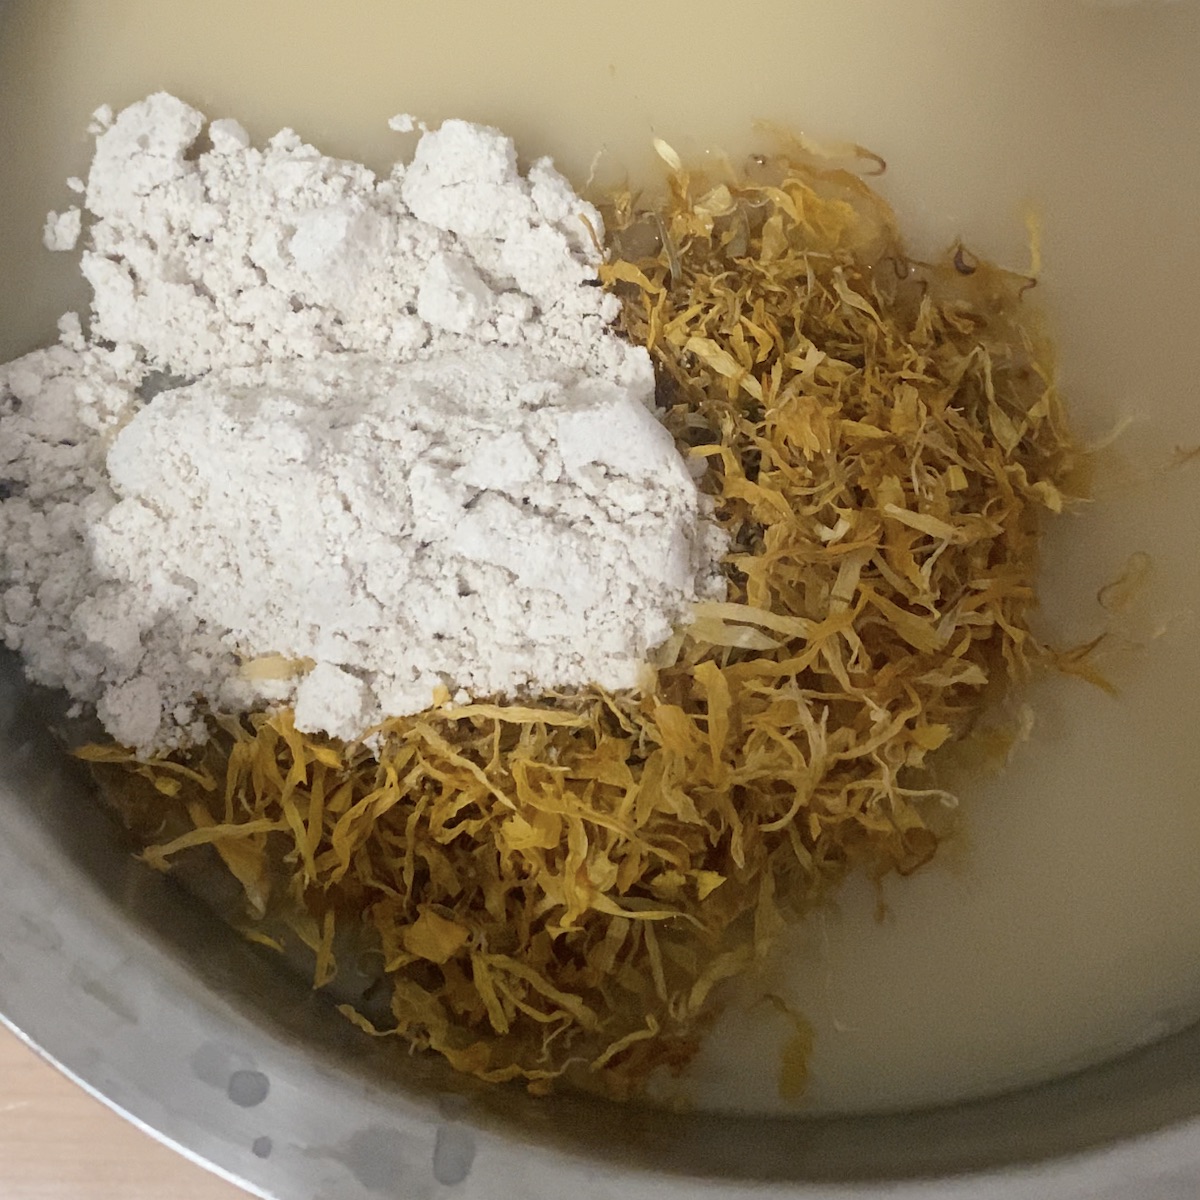 Lemon Honey Soap Recipe without Lye